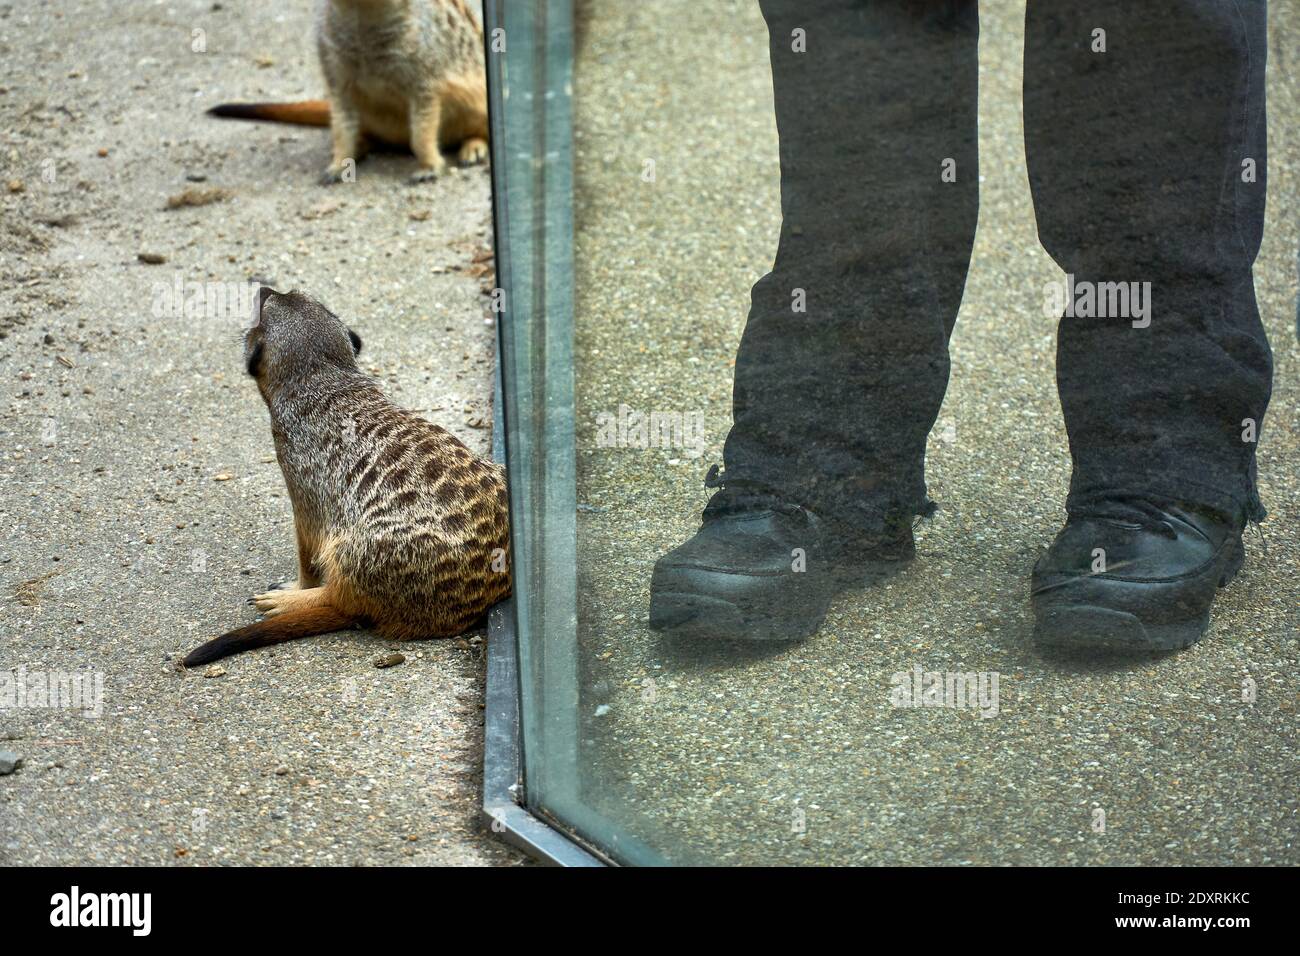 Visitatore che fotografa da vicino meerkat / suricati nel loro recinto nello zoo di Edimburgo RZSS, Scozia, Regno Unito Foto Stock